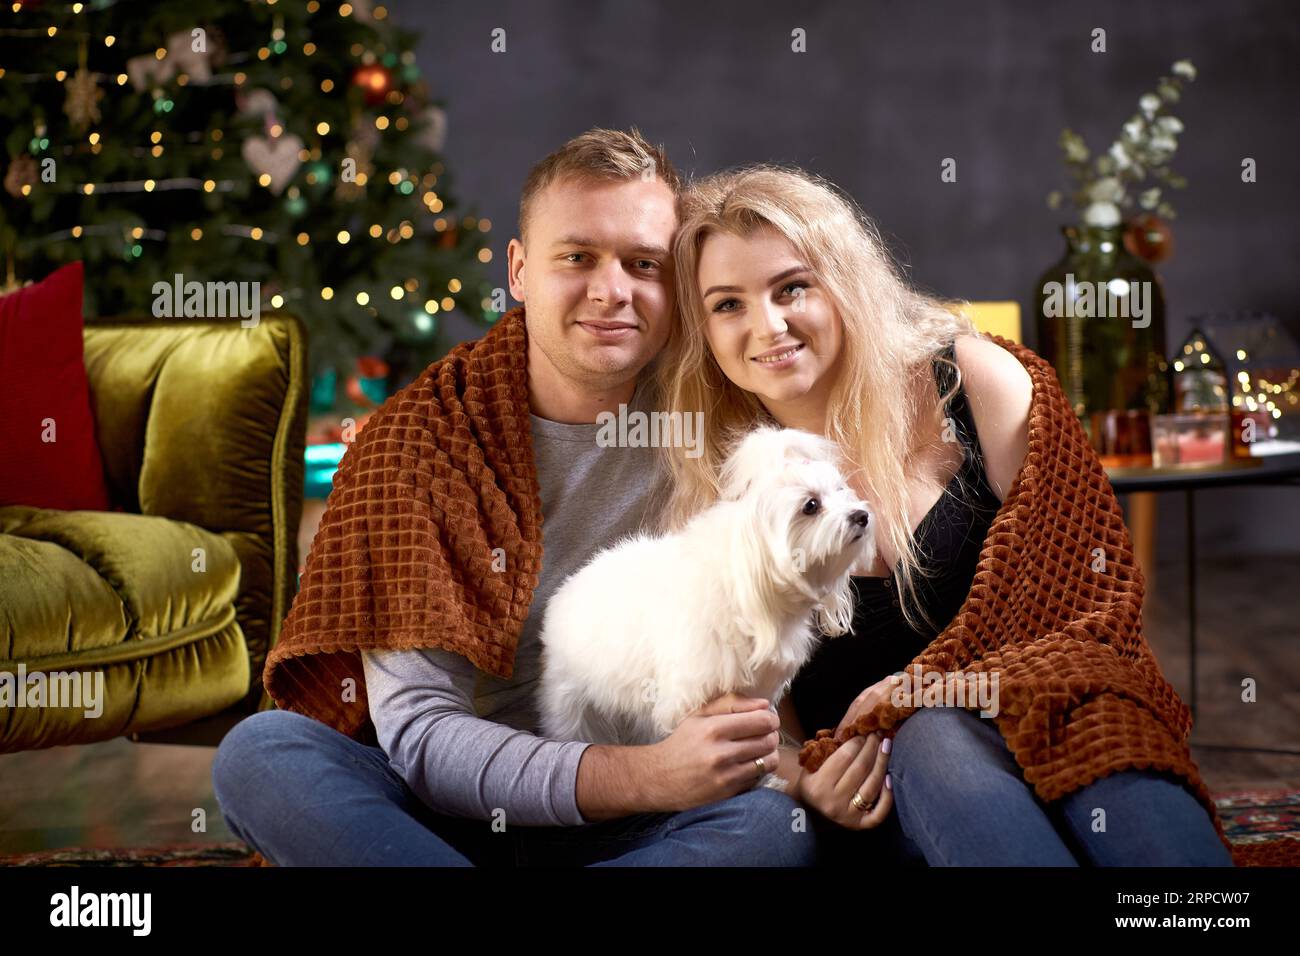 Charmant couple romantique avec leur chien près de l'arbre de Noël dans l'intérieur de maison confortable esthétique festive. Franc, vrai moment. Bonne humeur et avoir du plaisir à faire Banque D'Images